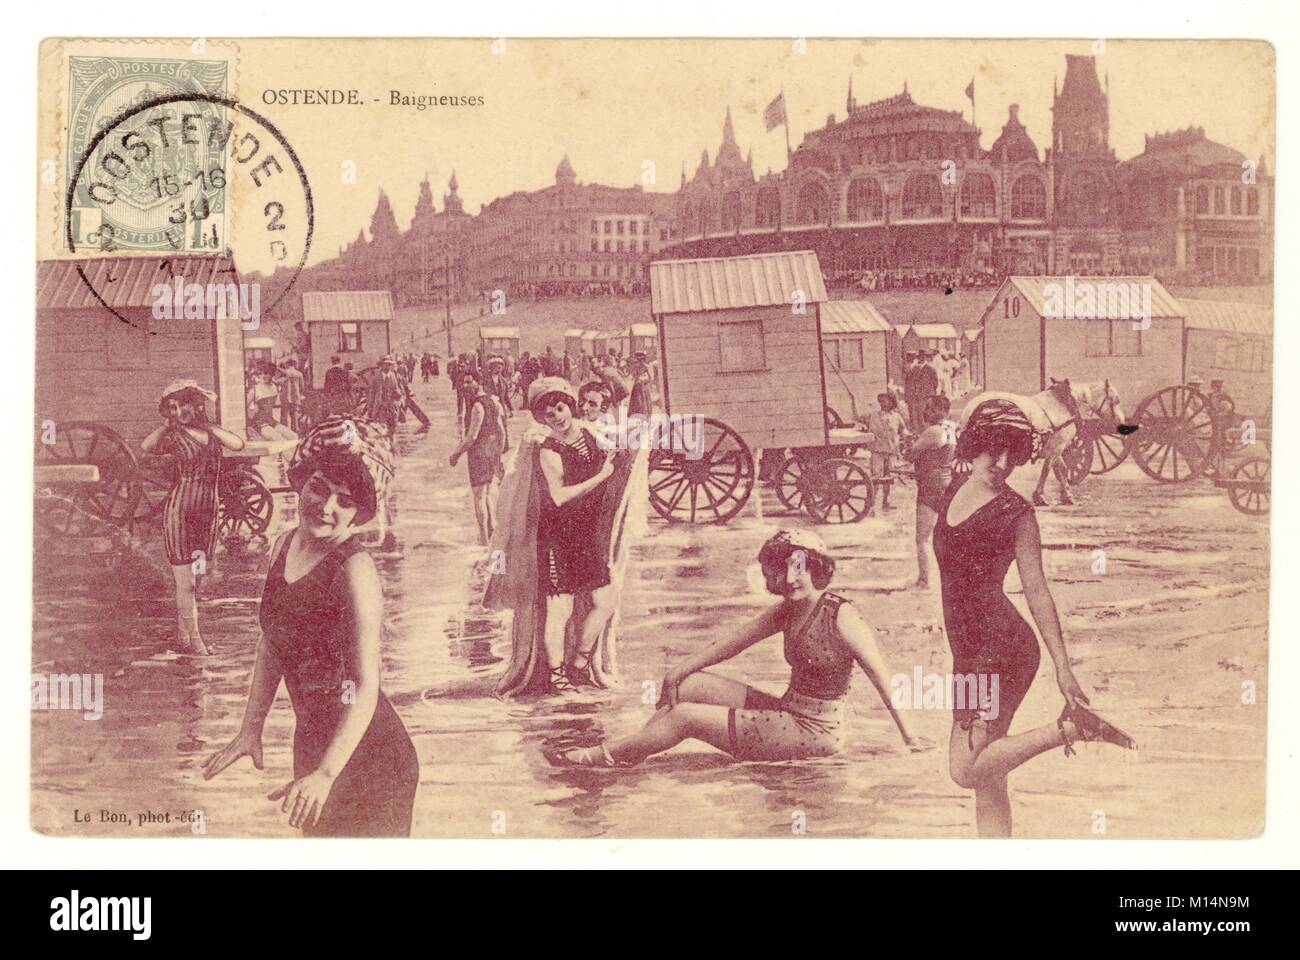 Originale cartolina colorata di bagnanti e capanne da bagno, Ostende, Belgio, pubblicato nel mese di agosto 1912 Foto Stock